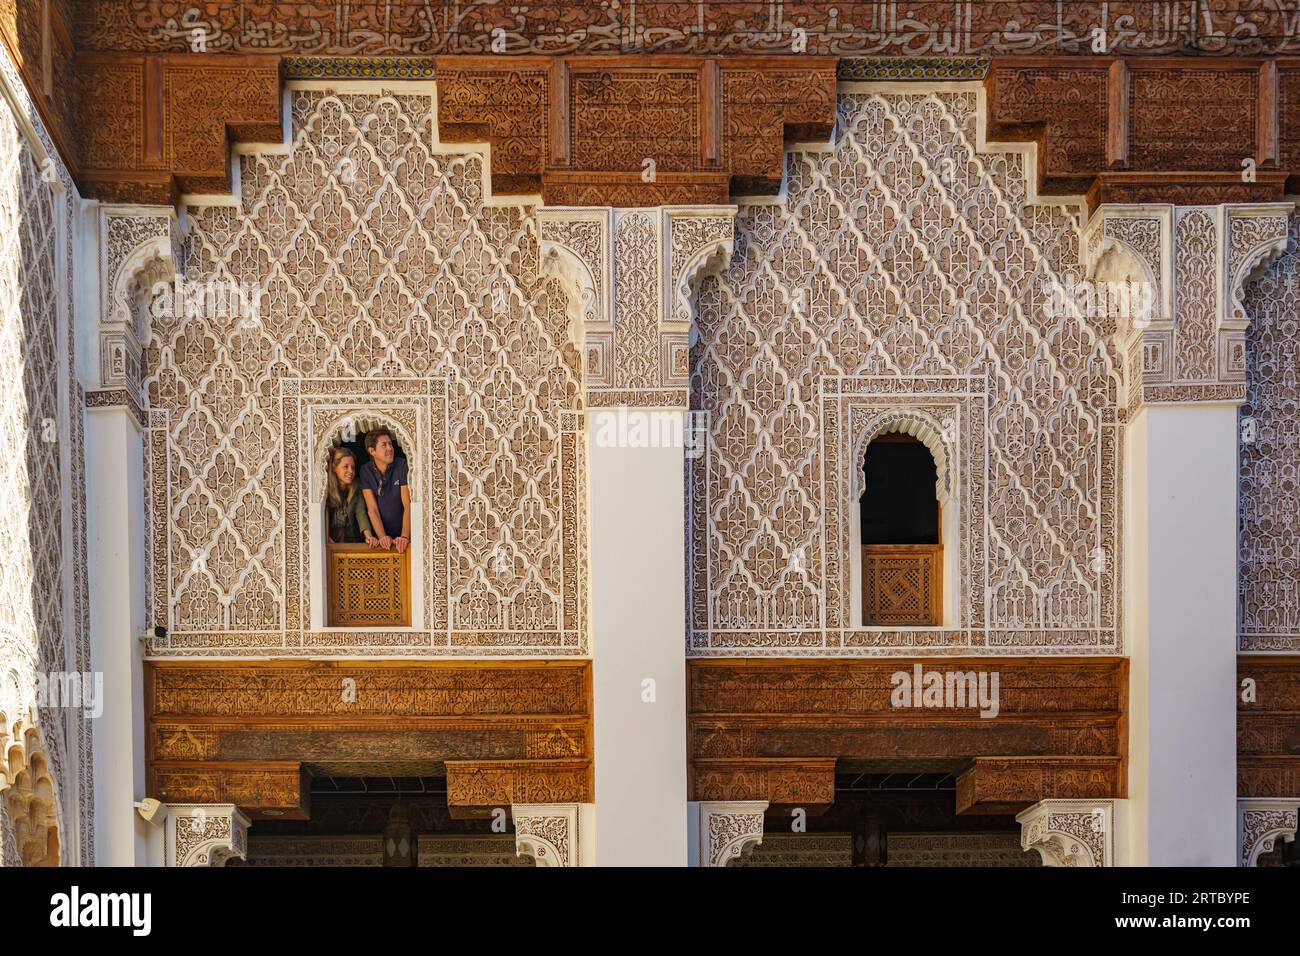 Afrique du Nord. Maroc. Marrakech. Touristes aux fenêtres de la Medersa Ben Youssef. La plus grande et la plus importante madrassa du Maroc Banque D'Images